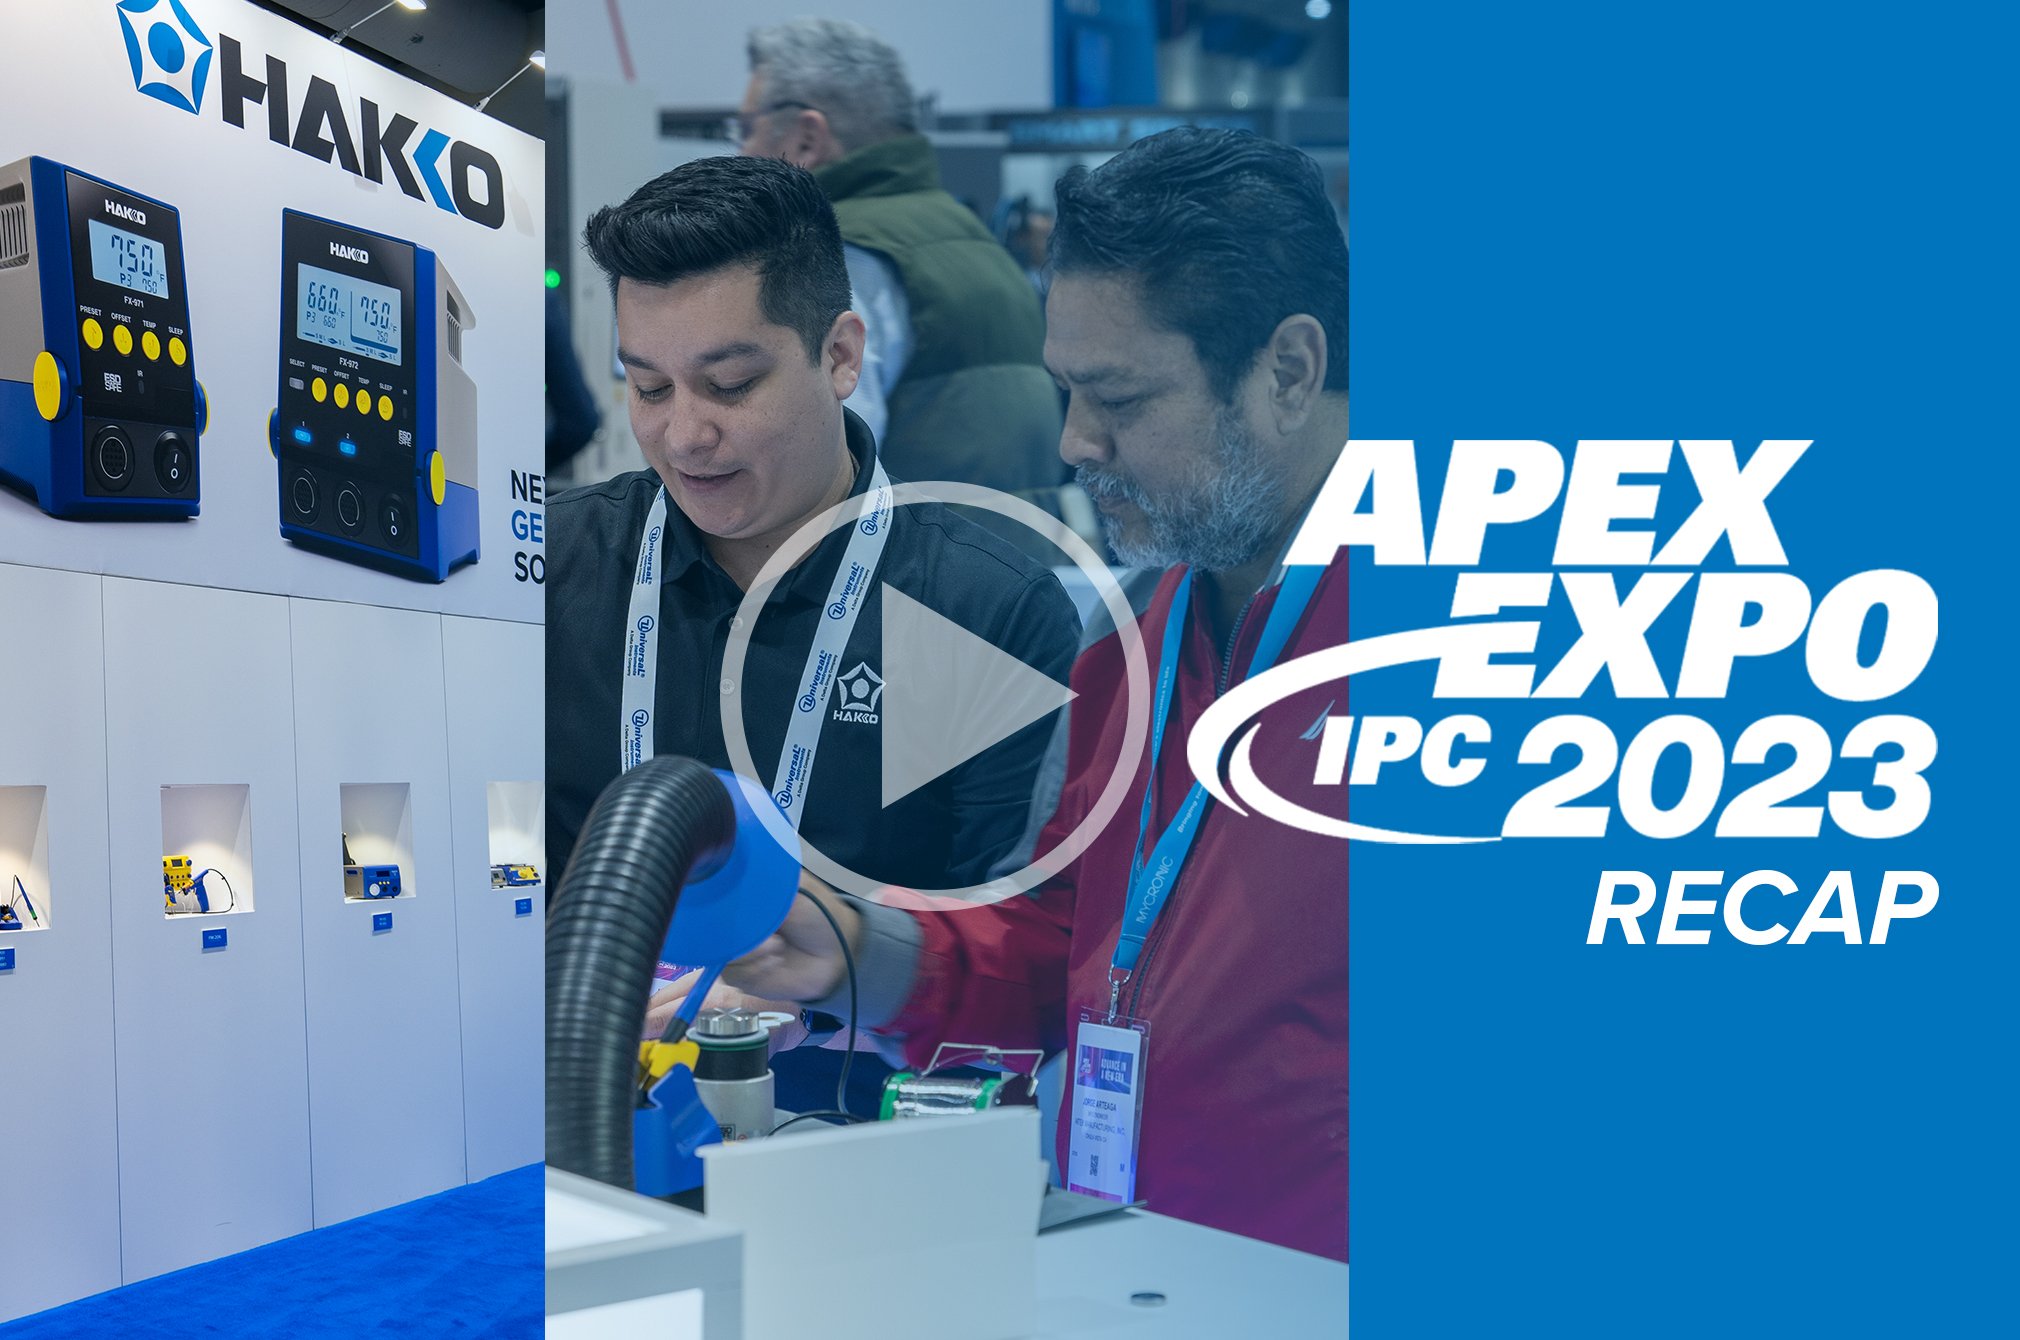 IPC APEX EXPO 2023 - Recap